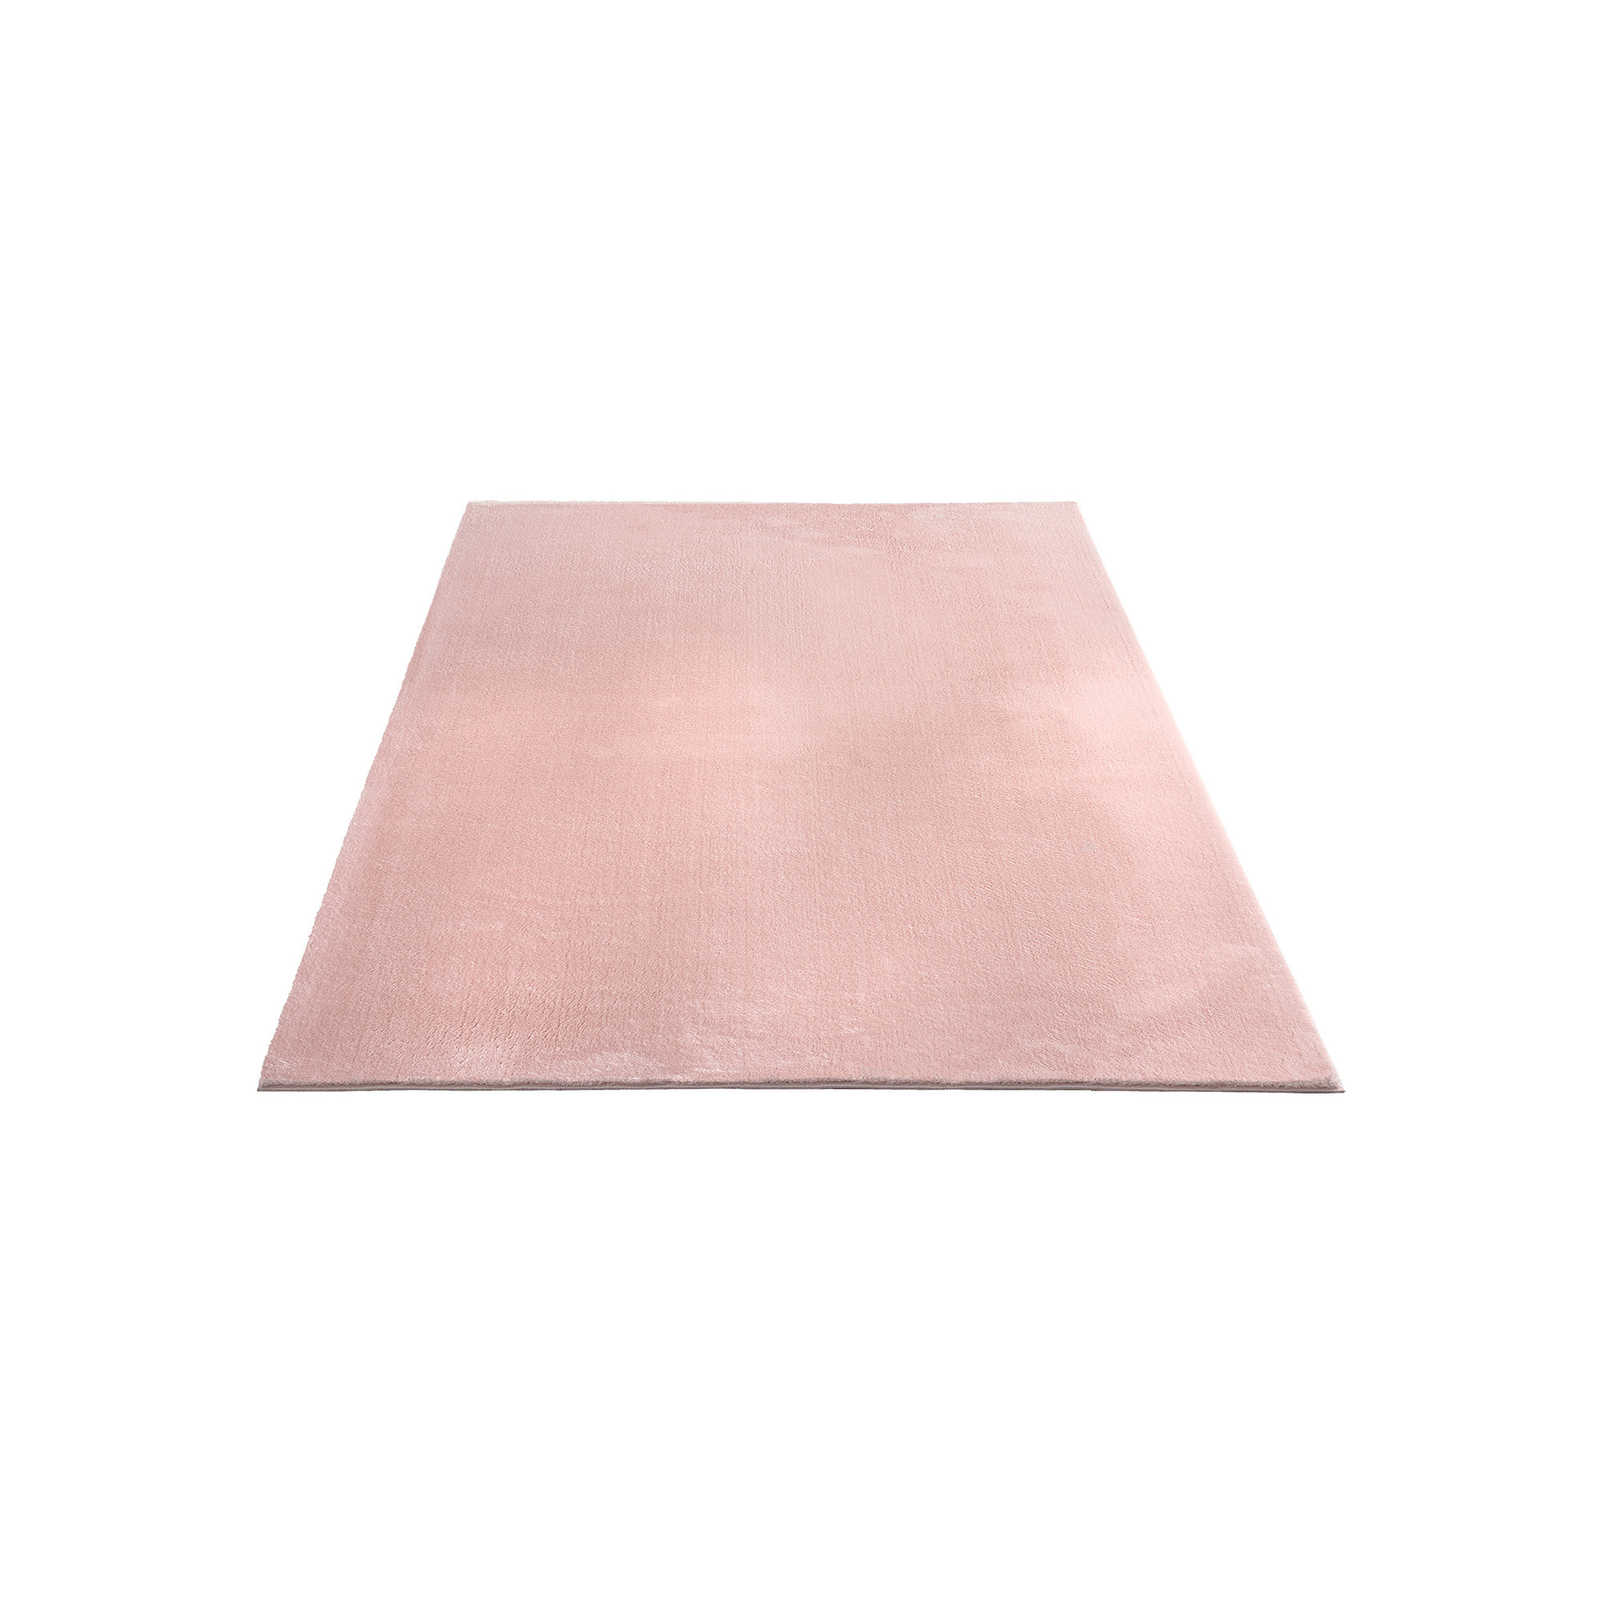 Zarter Hochflor Teppich in Rosa – 230 x 160 cm
